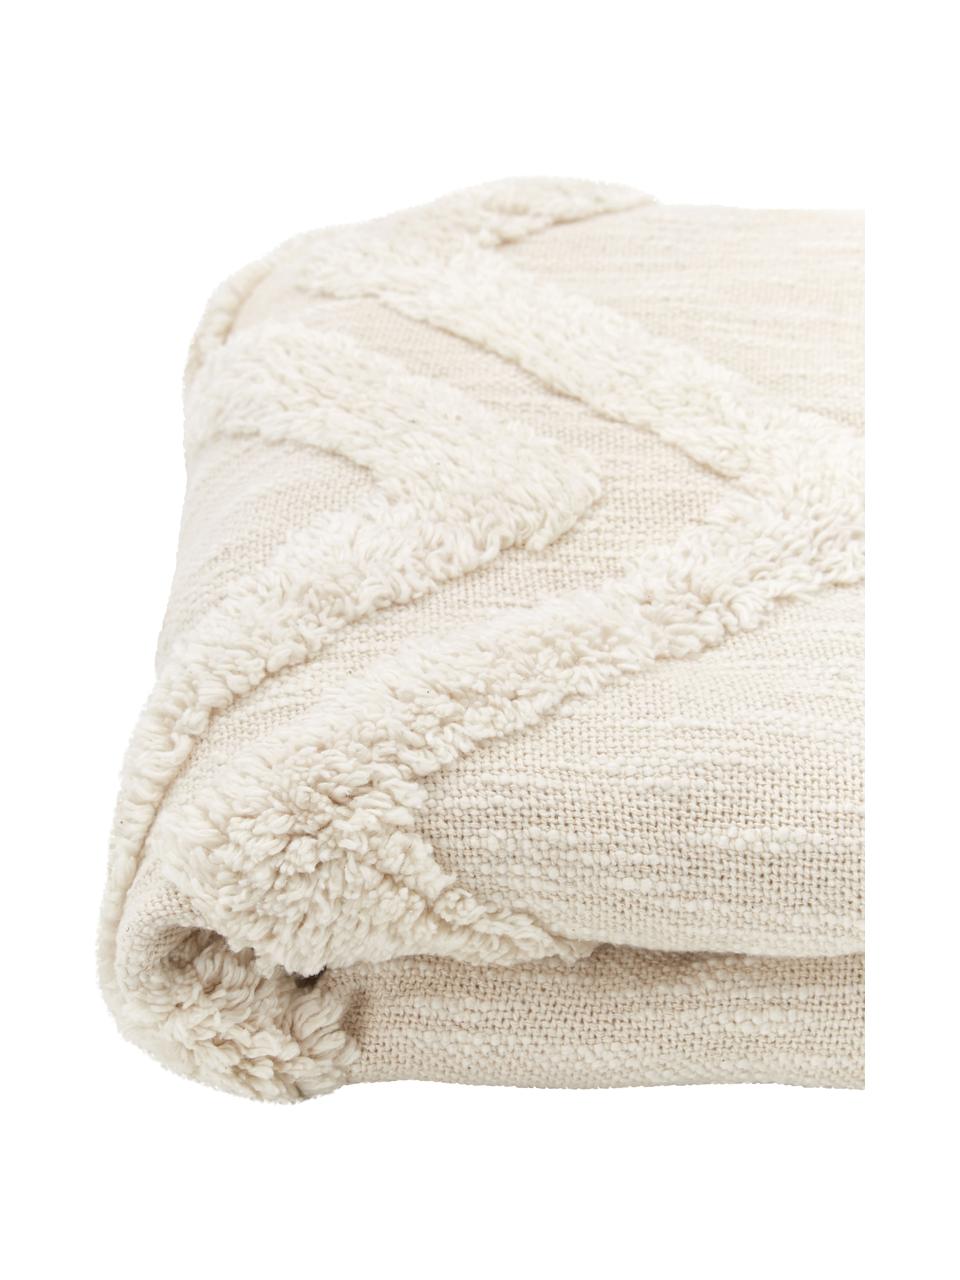 Plaid blanc écru coton bohème Akesha, 100 % coton, Couleur crème, larg. 130 x long. 170 cm